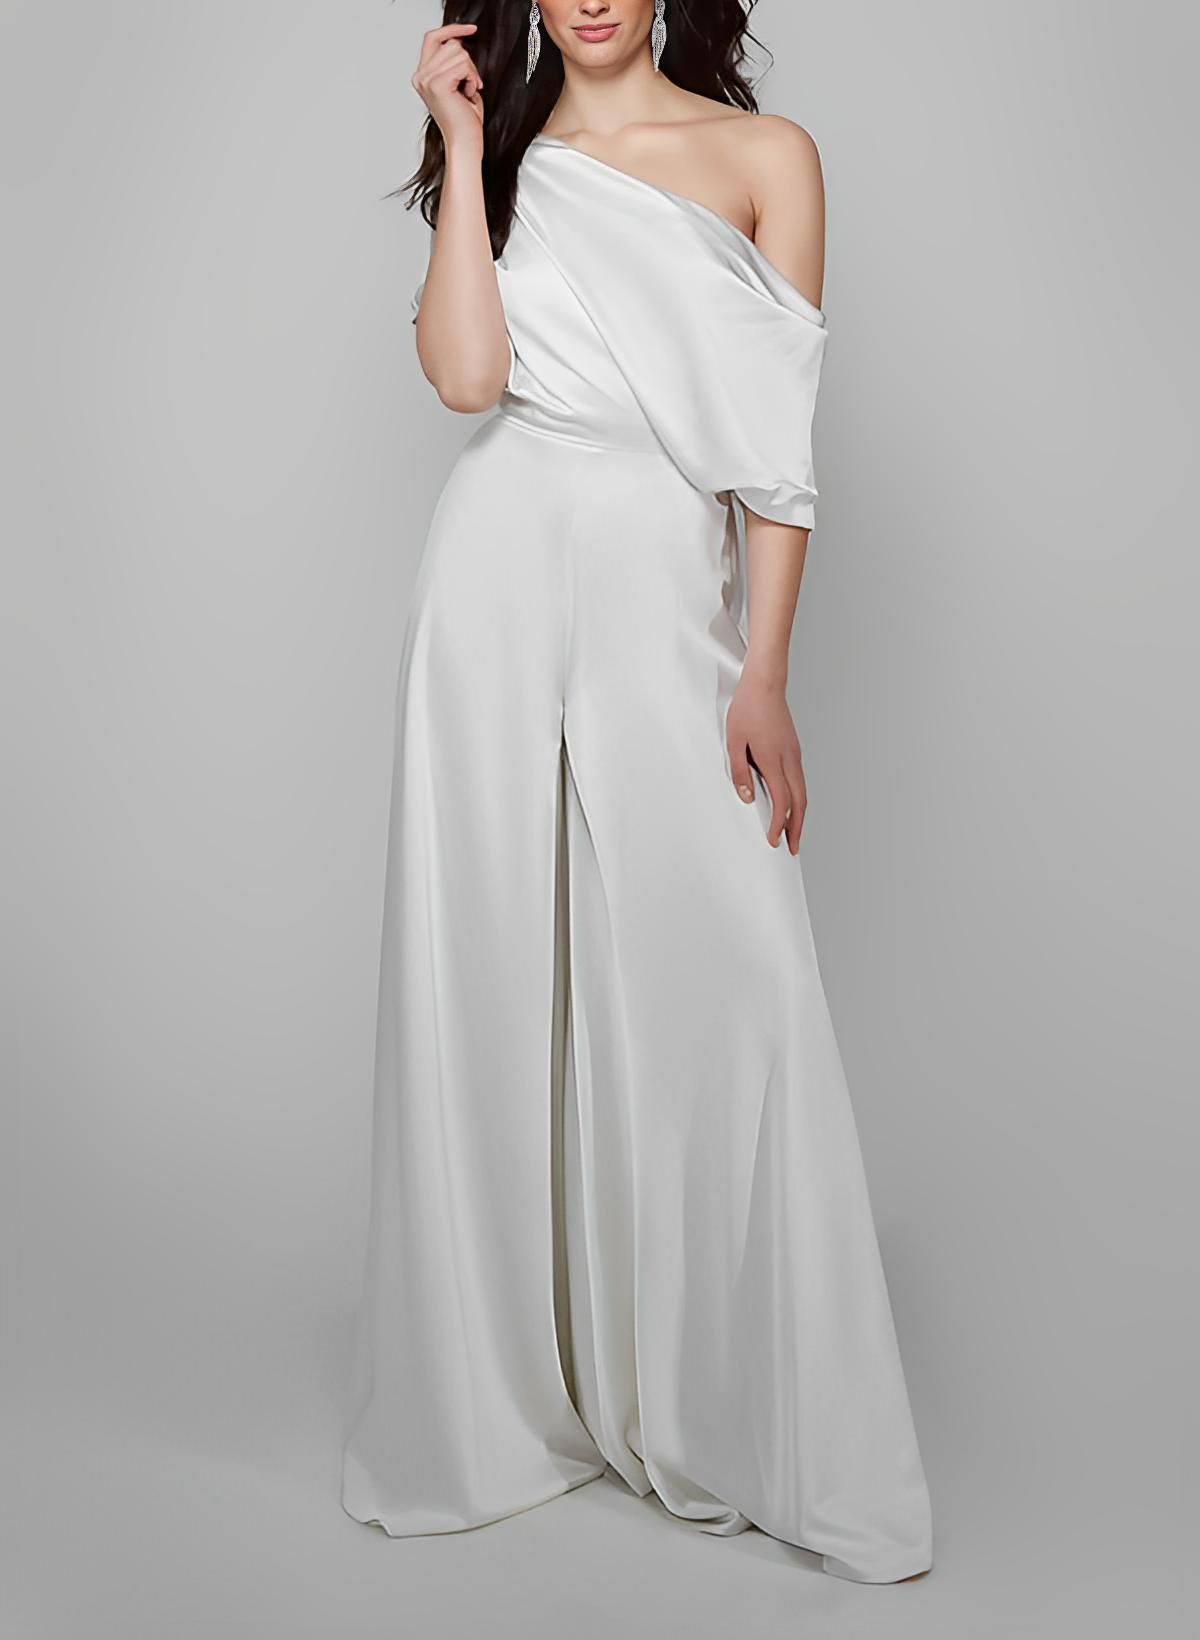 Elegant One-Shoulder Sleeveless Floor-Length Silk Like Satin Wedding Dresses